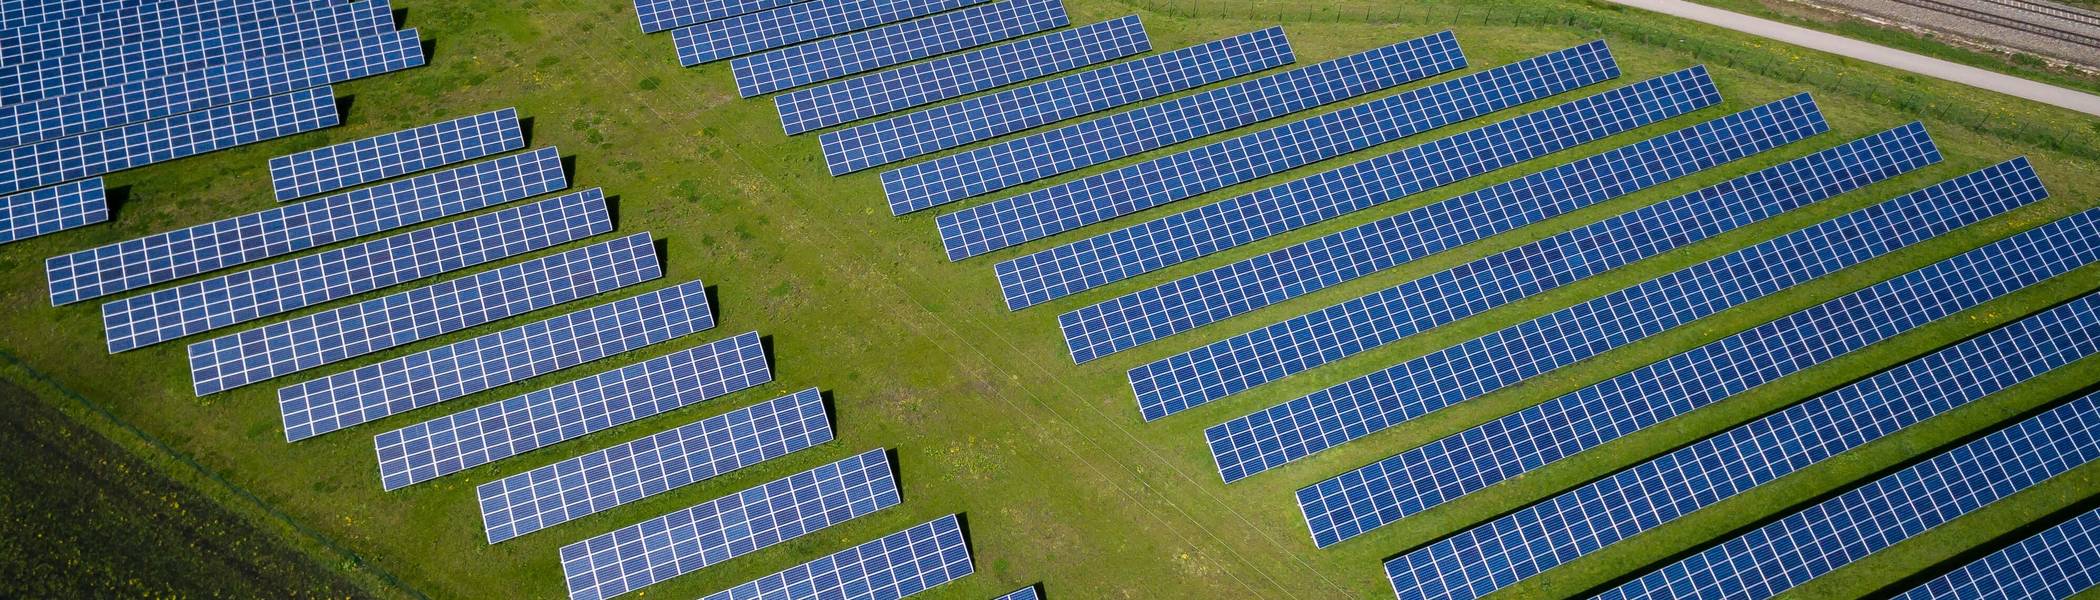 De aanleg van zonnepanelen op bedrijfshallen kan bijdragen aan de verbetering van de veiligheid van